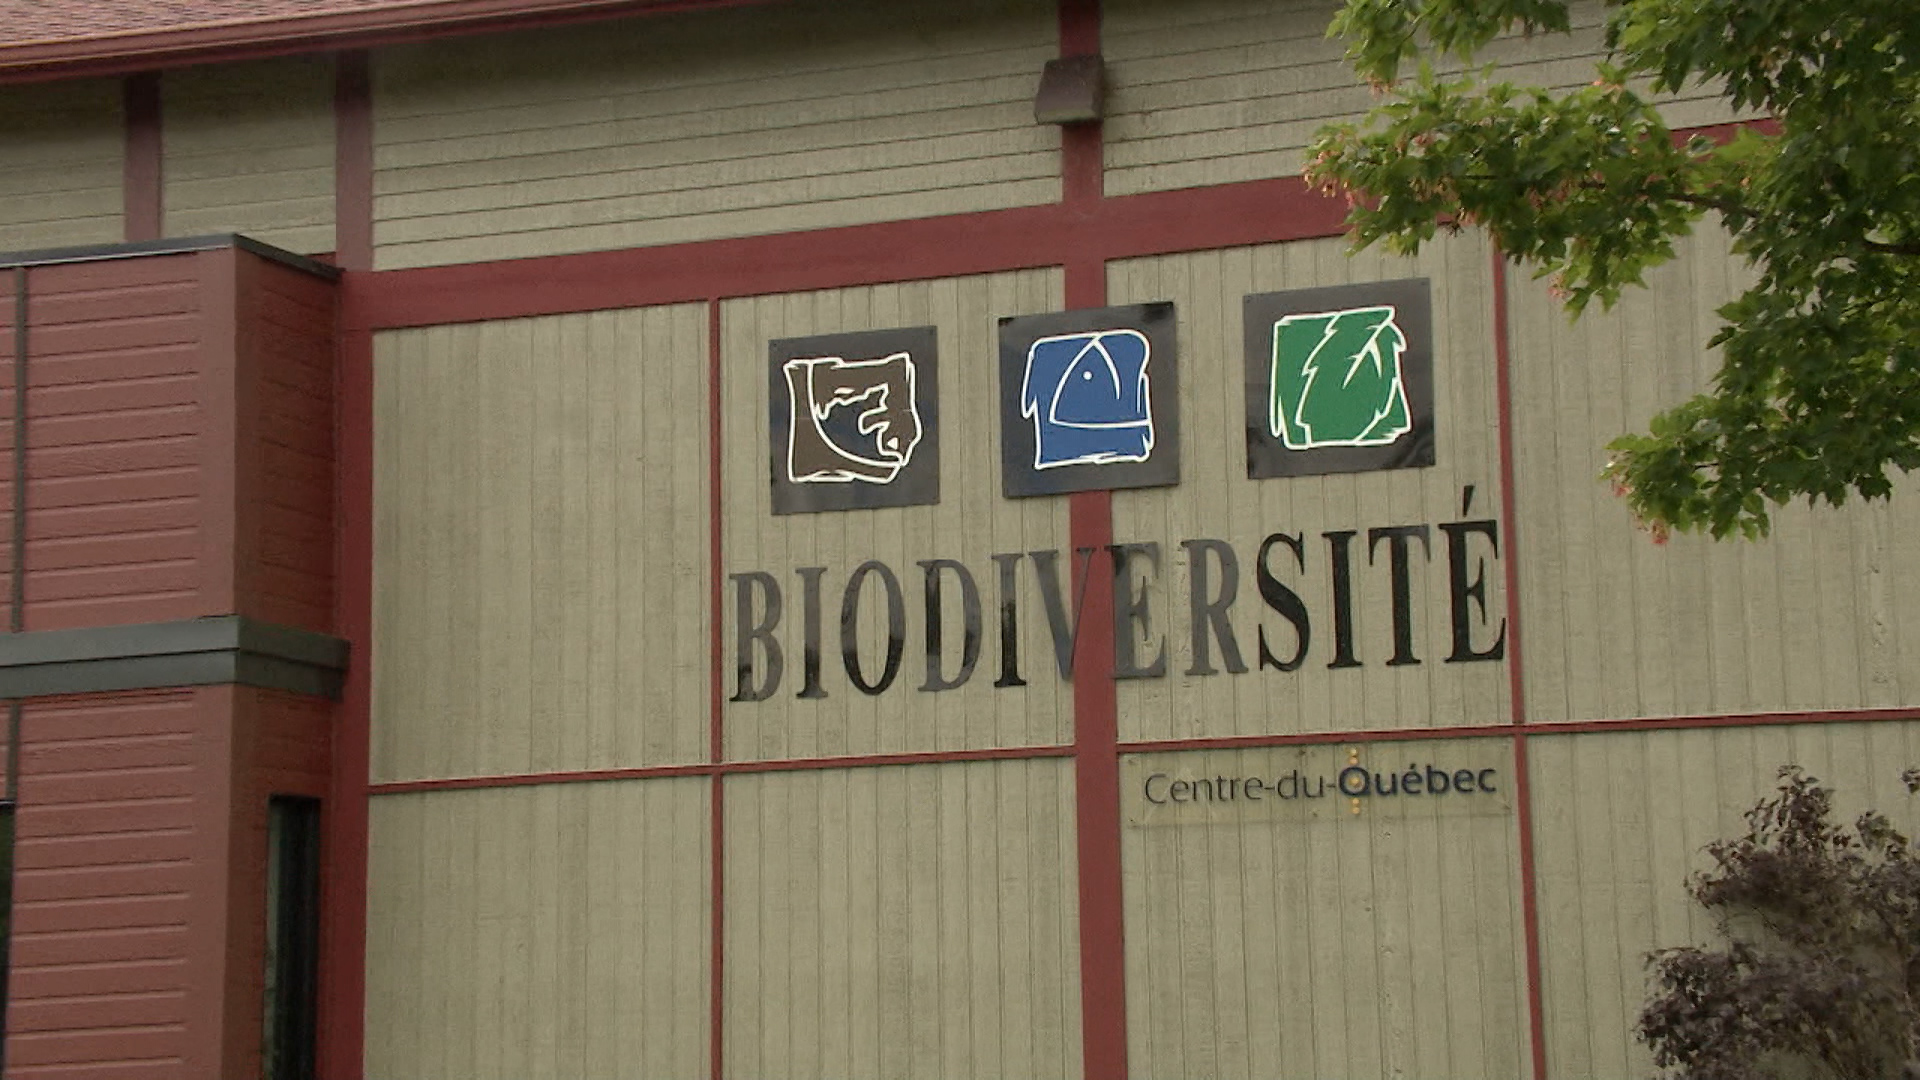 Centre de la Biodiversité du Québec